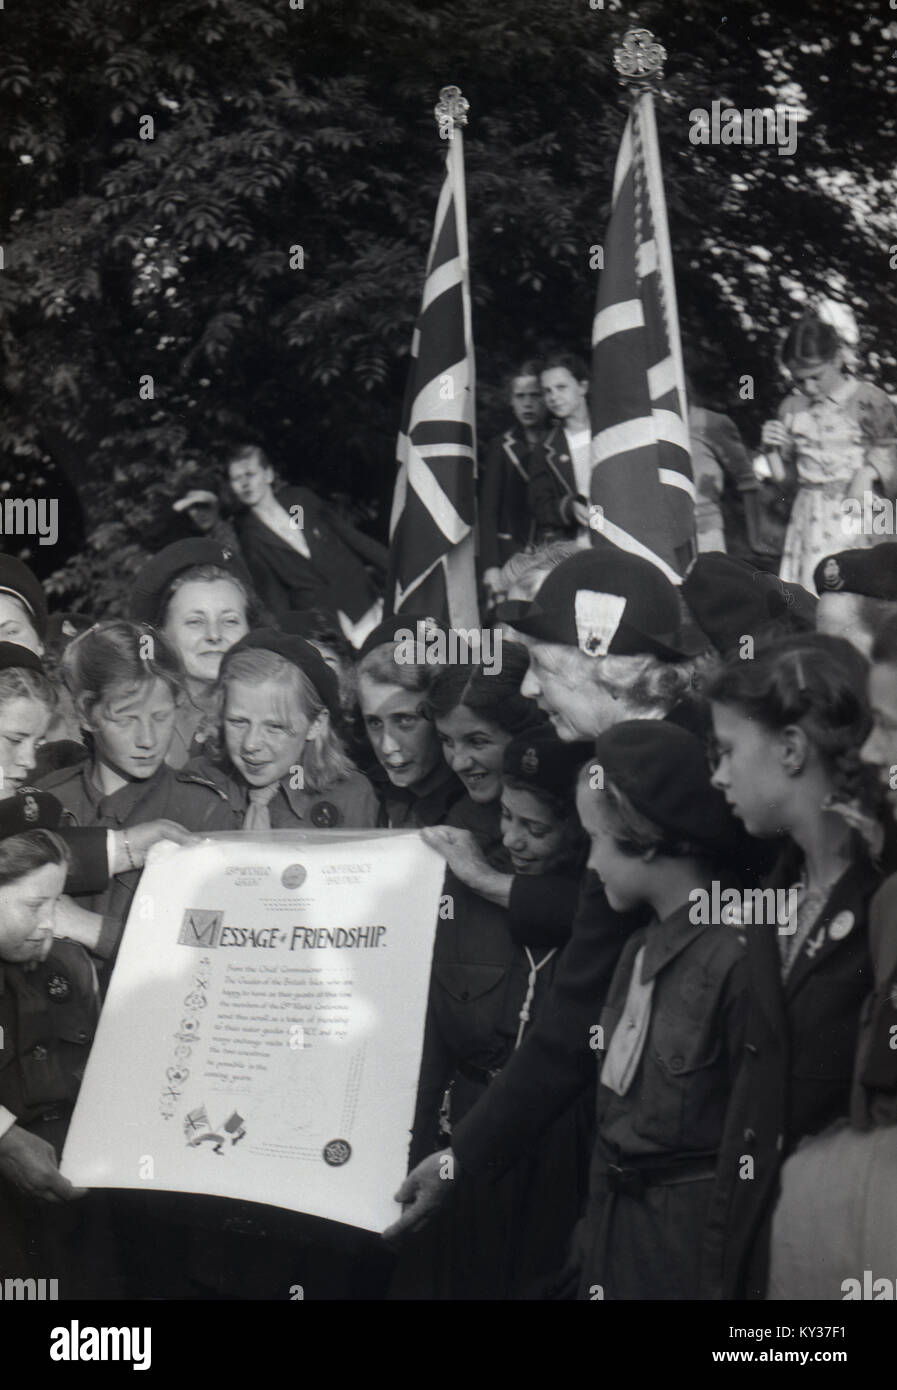 1950, tableau historique d'un groupe de jeunes guides avec l'Union jack drapeaux et brandissant une 'message d'amitié' à la 13e Conférence mondiale tenue à la Women's College, seul St Hugh's, l'Université d'Oxford, Angleterre, Royaume-Uni. Banque D'Images